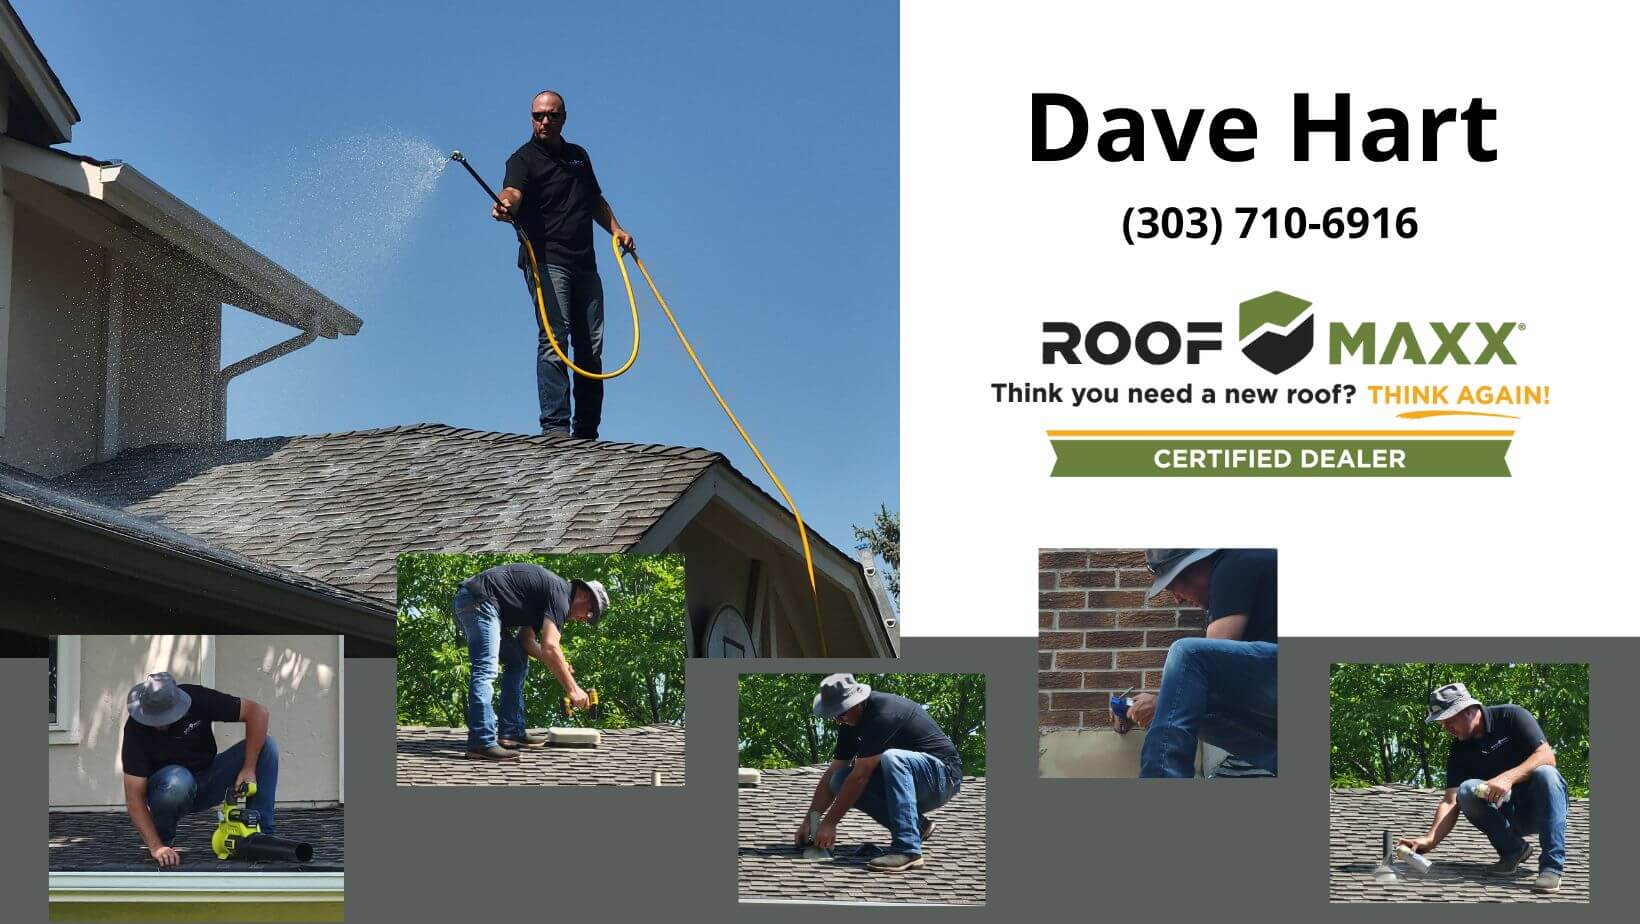 Roof Maxx Dave Hart Certified Dealer